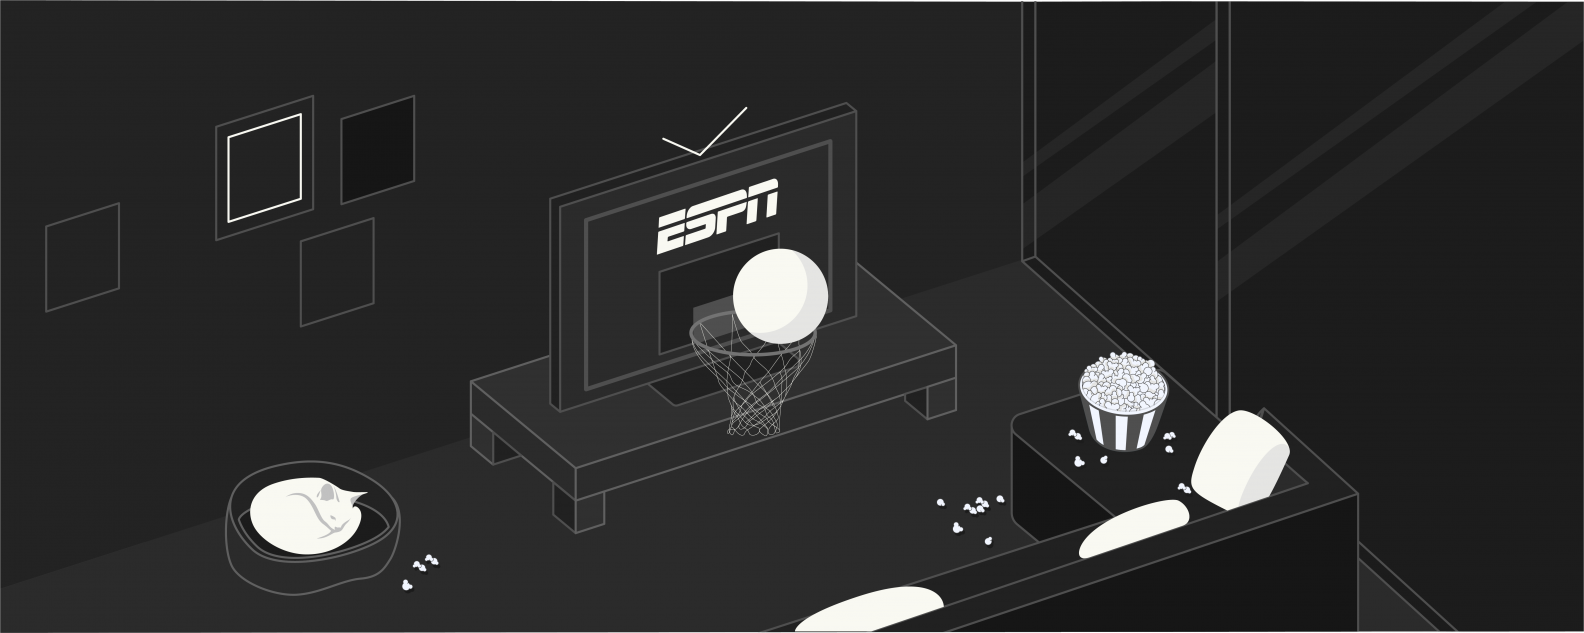 Come vedere ESPN Plus in Italia